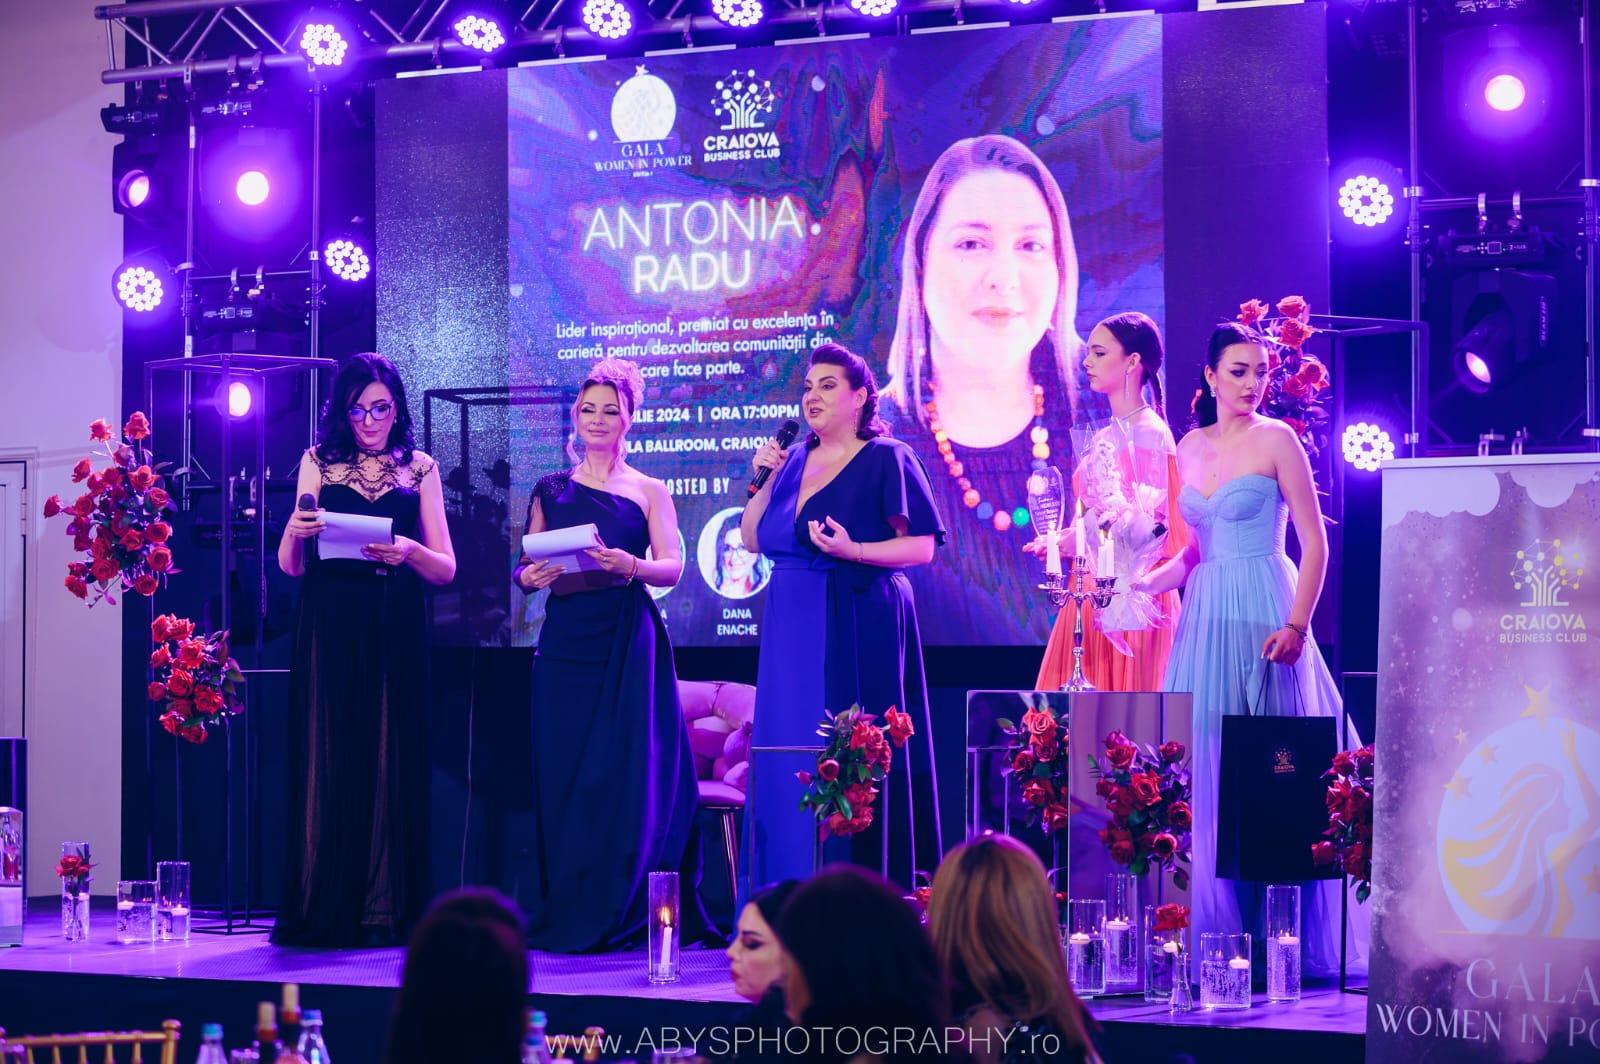 Gala Women in Power – Un eveniment dedicat femeilor de succes